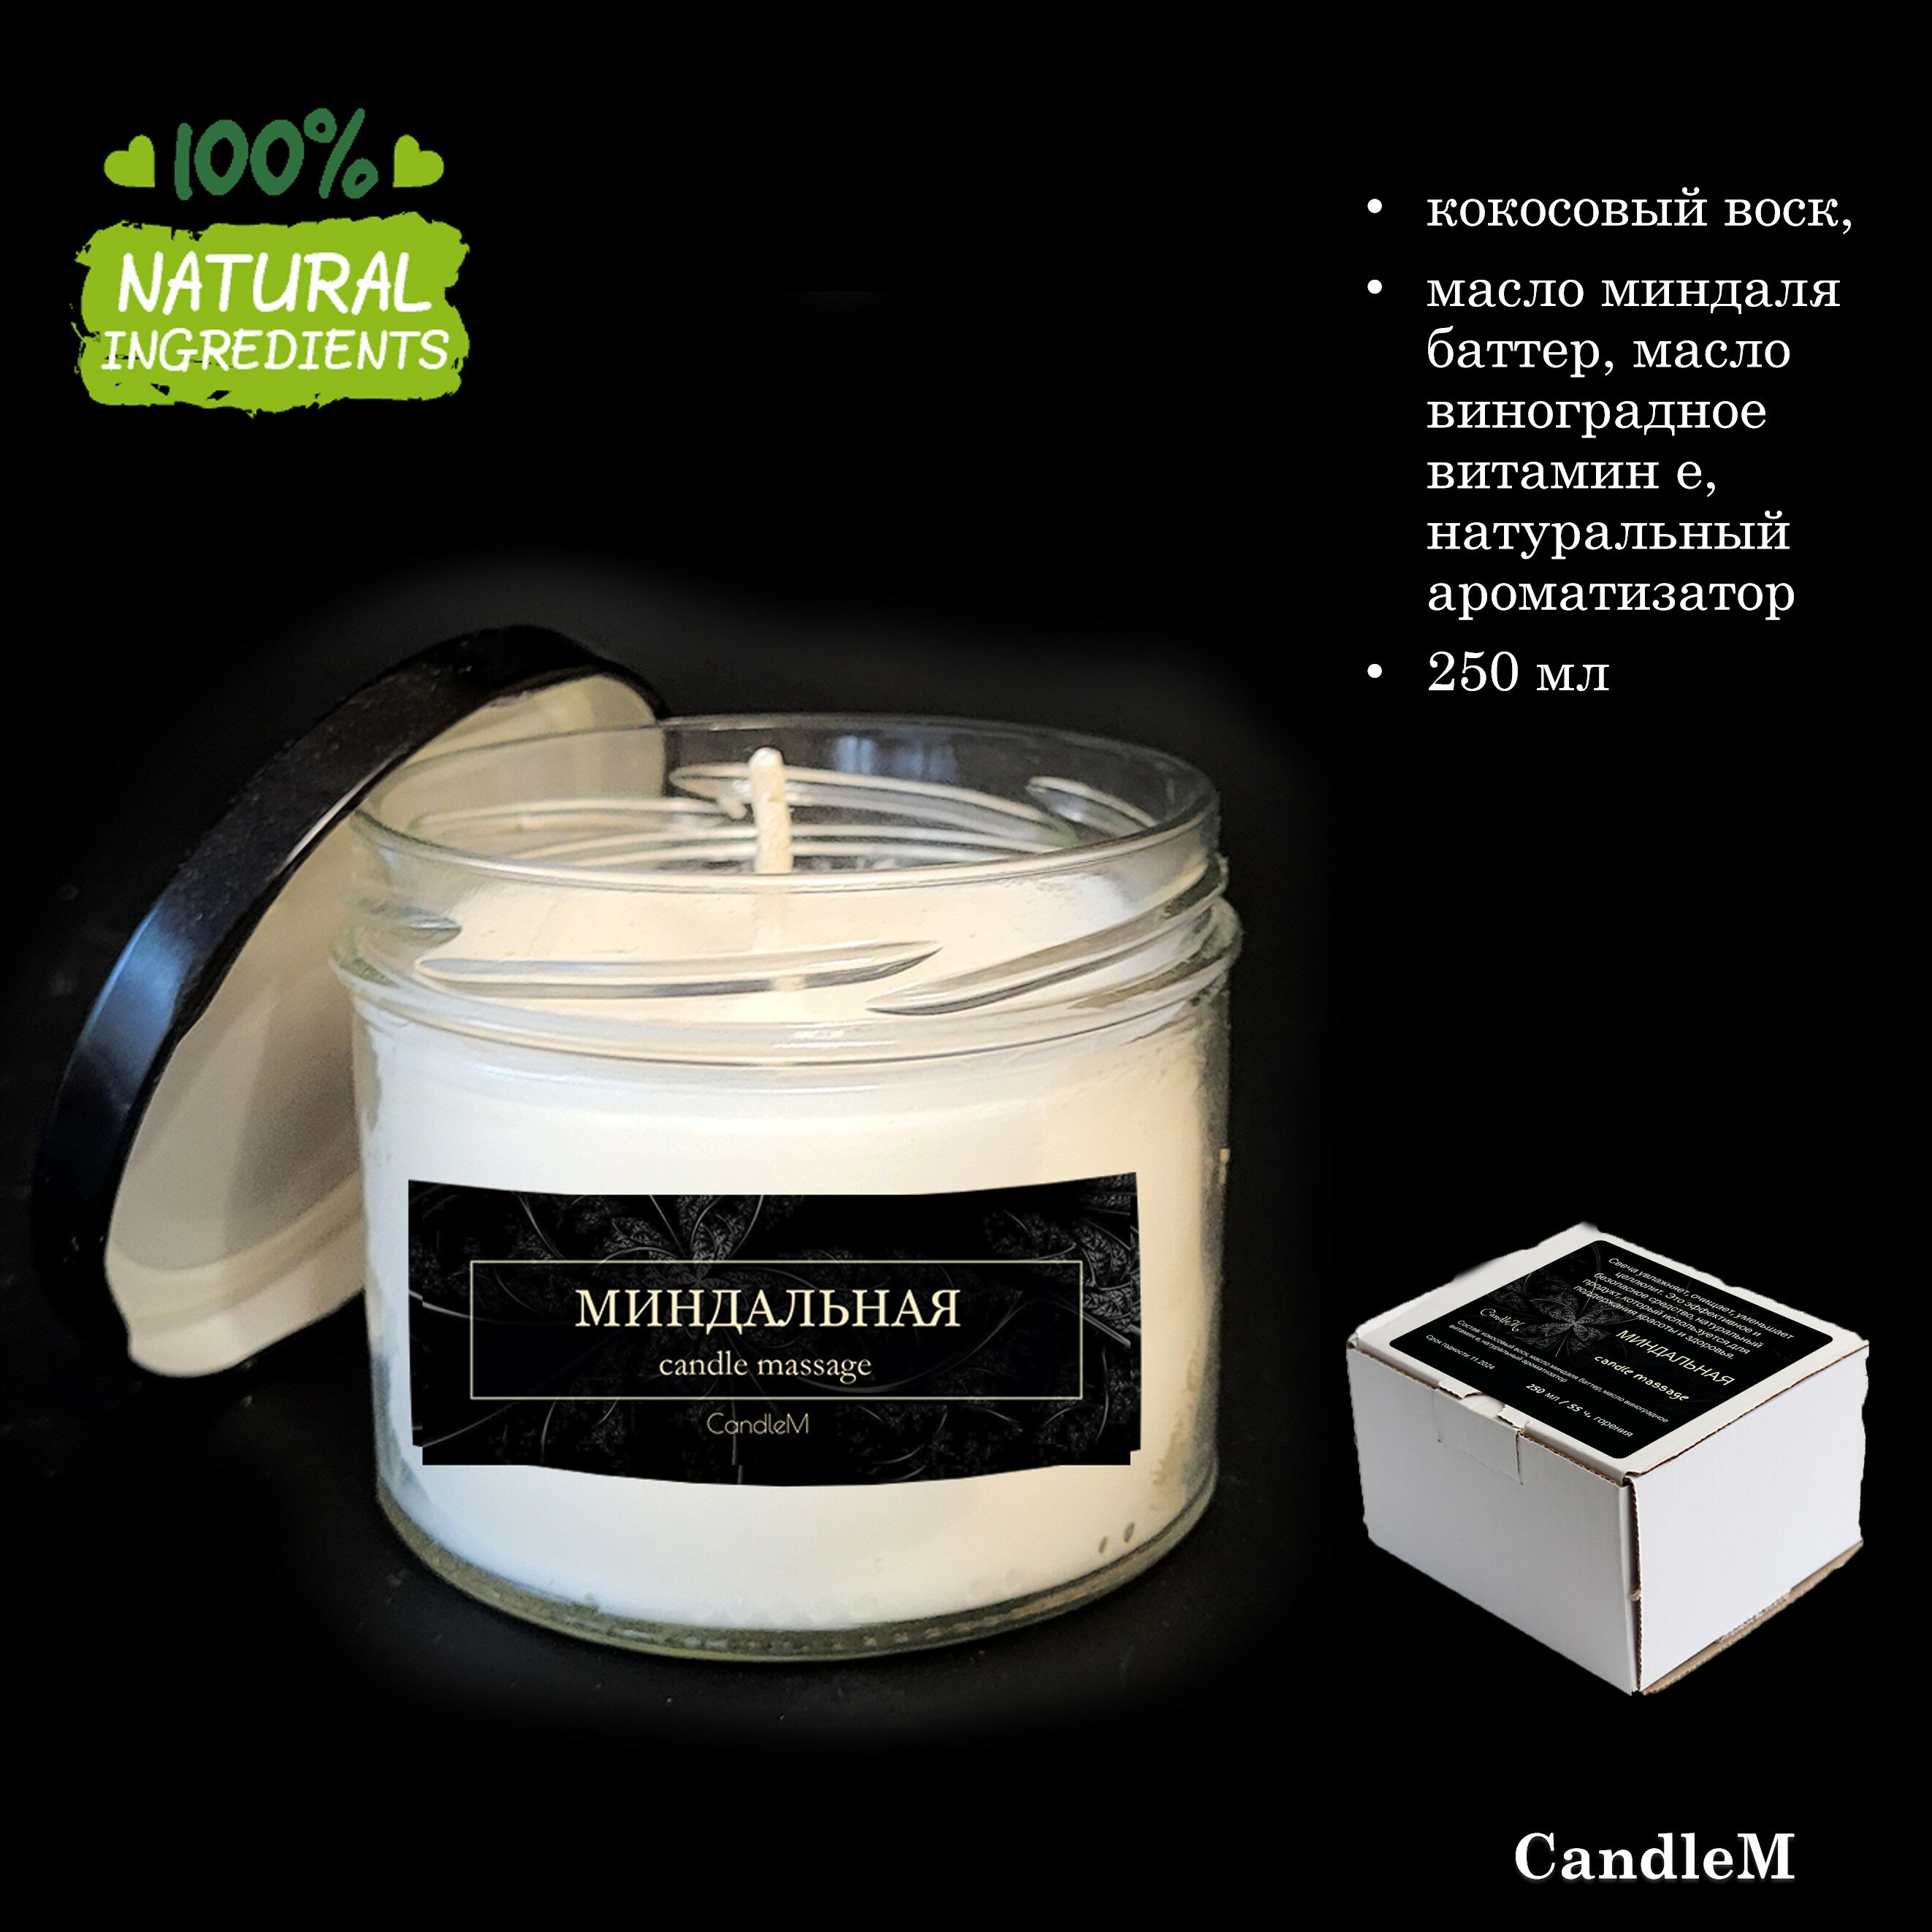 Миндальная, массажная свеча, CandleM (250 мл)